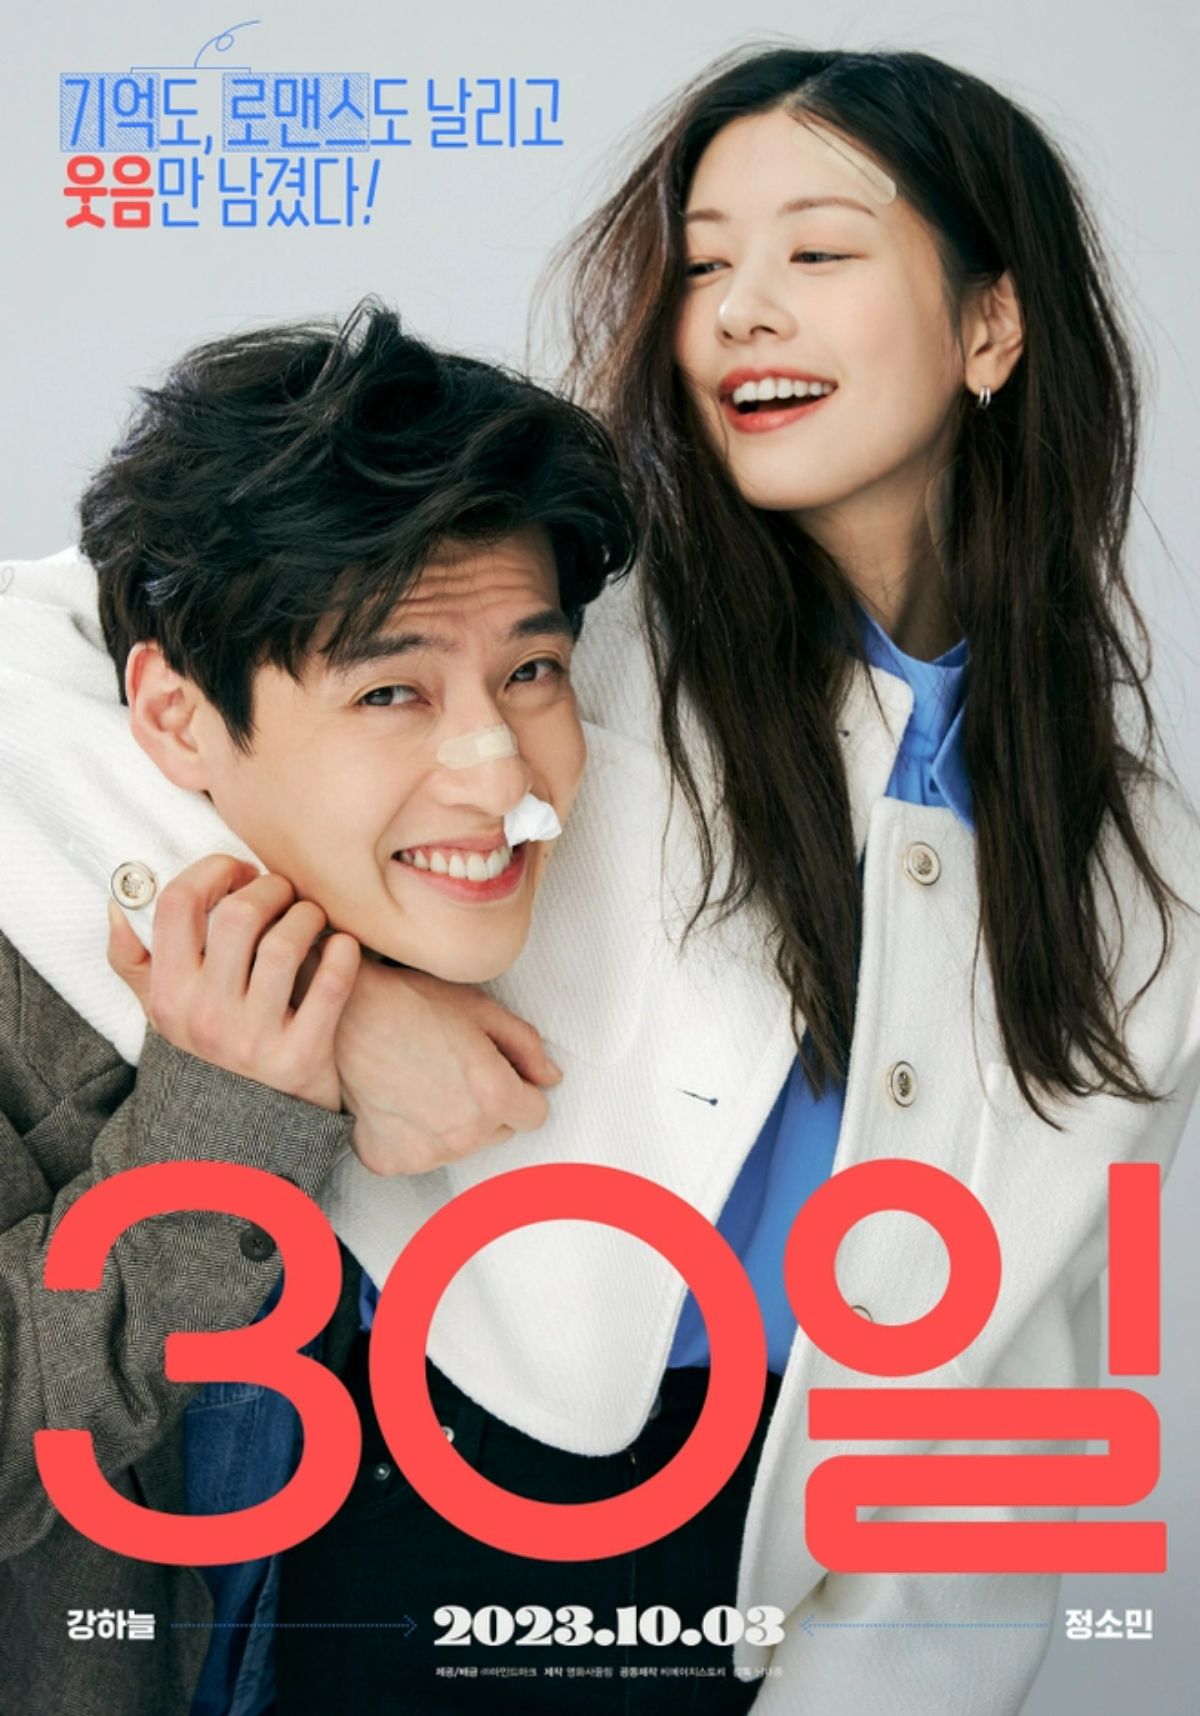 Bộ phim 30 Days xoay quanh cặp đôi Jung Yeol (Kang Ha Neul) - một vị luật sư thông minh và vợ anh - Nara (Jung So Min) - nhà sản xuất nhiệt huyết trong lĩnh vực phim điện ảnh